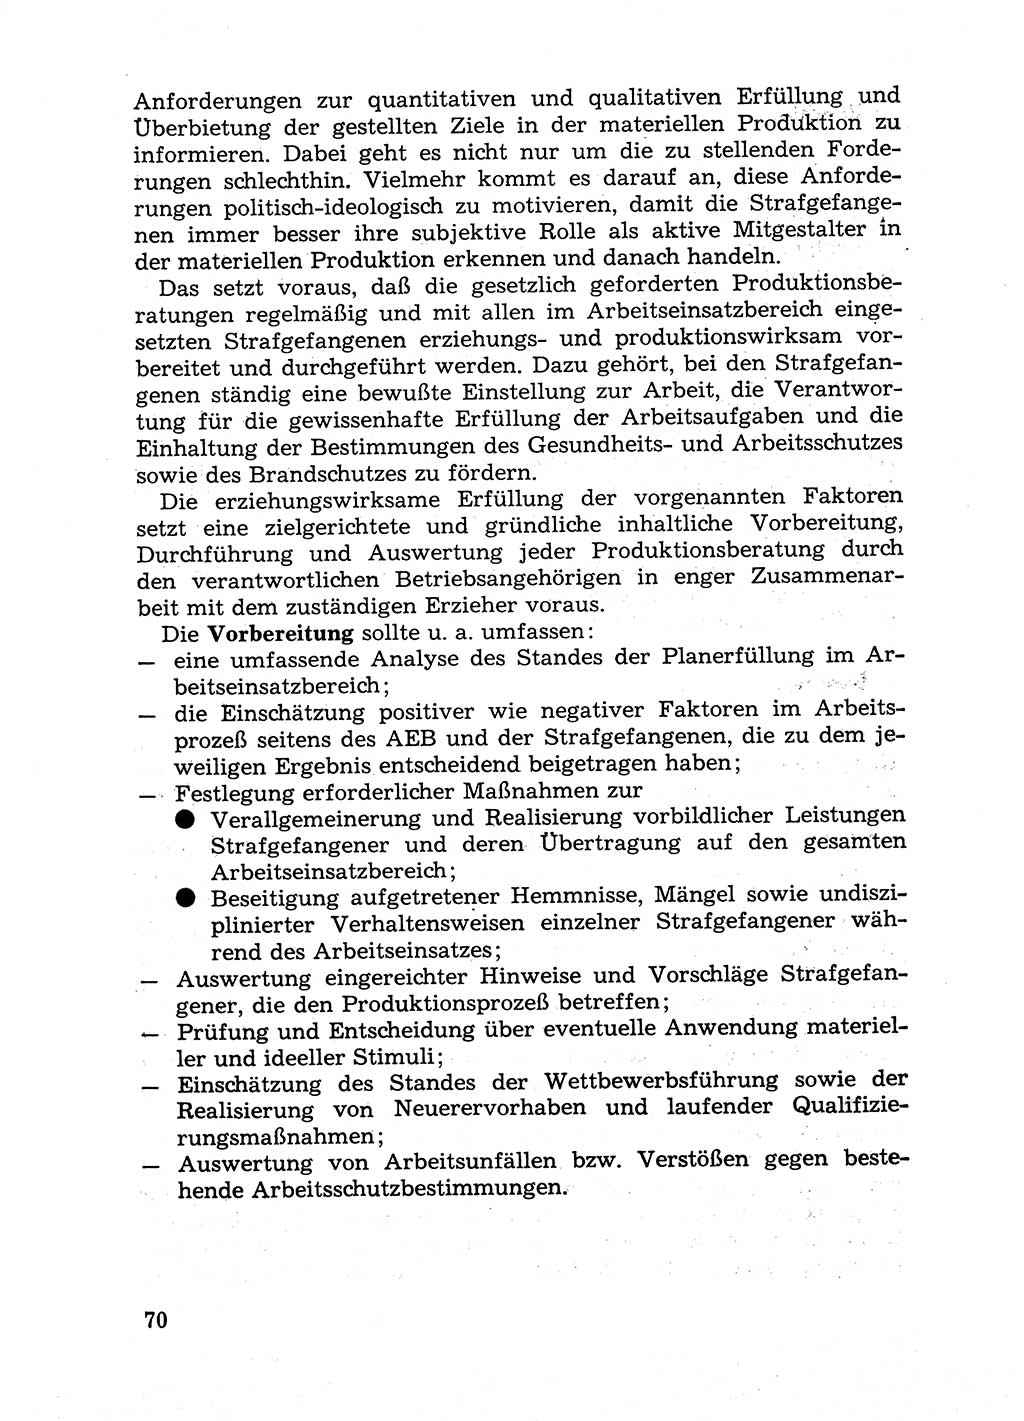 Handbuch für Betriebsangehörige, Abteilung Strafvollzug (SV) [Ministerium des Innern (MdI) Deutsche Demokratische Republik (DDR)] 1981, Seite 70 (Hb. BA Abt. SV MdI DDR 1981, S. 70)